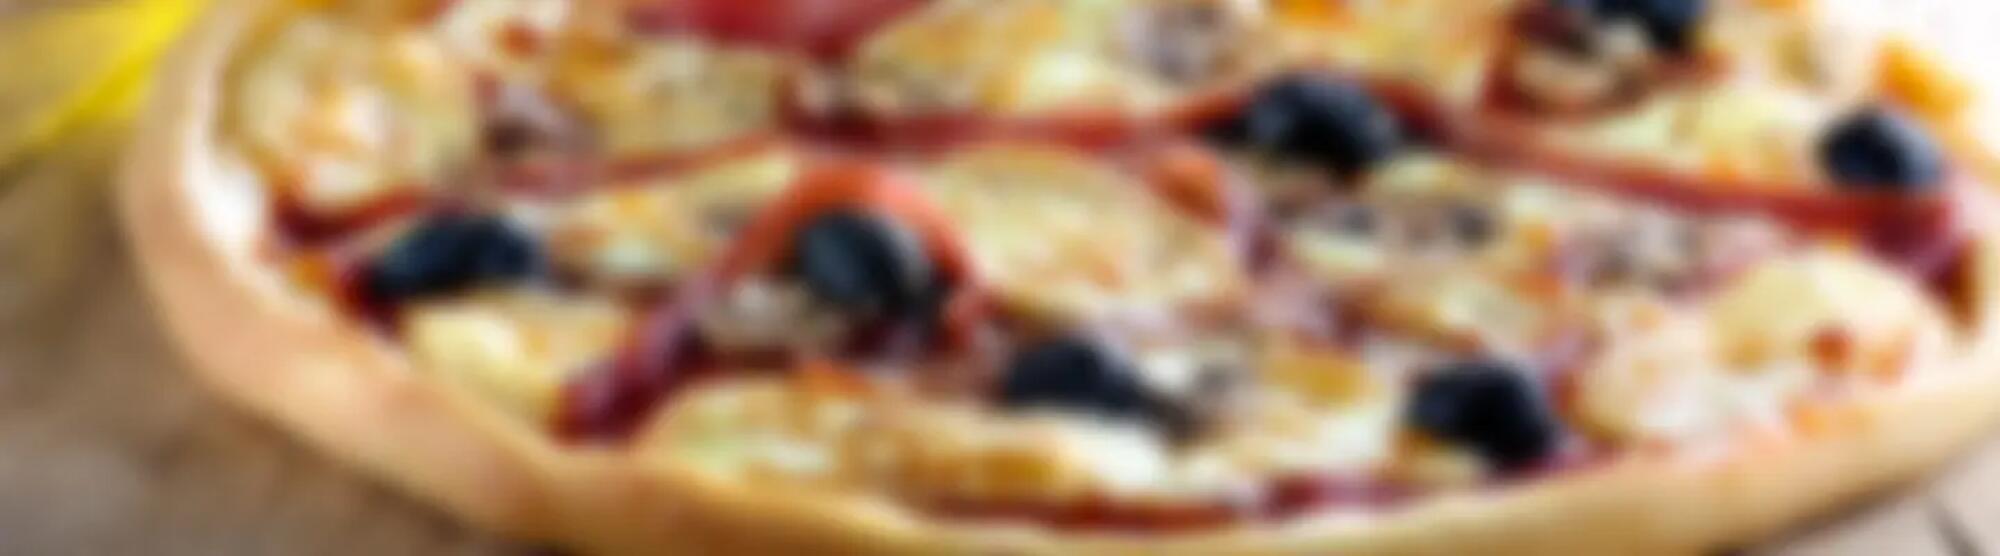 Recette : Pizza raclette